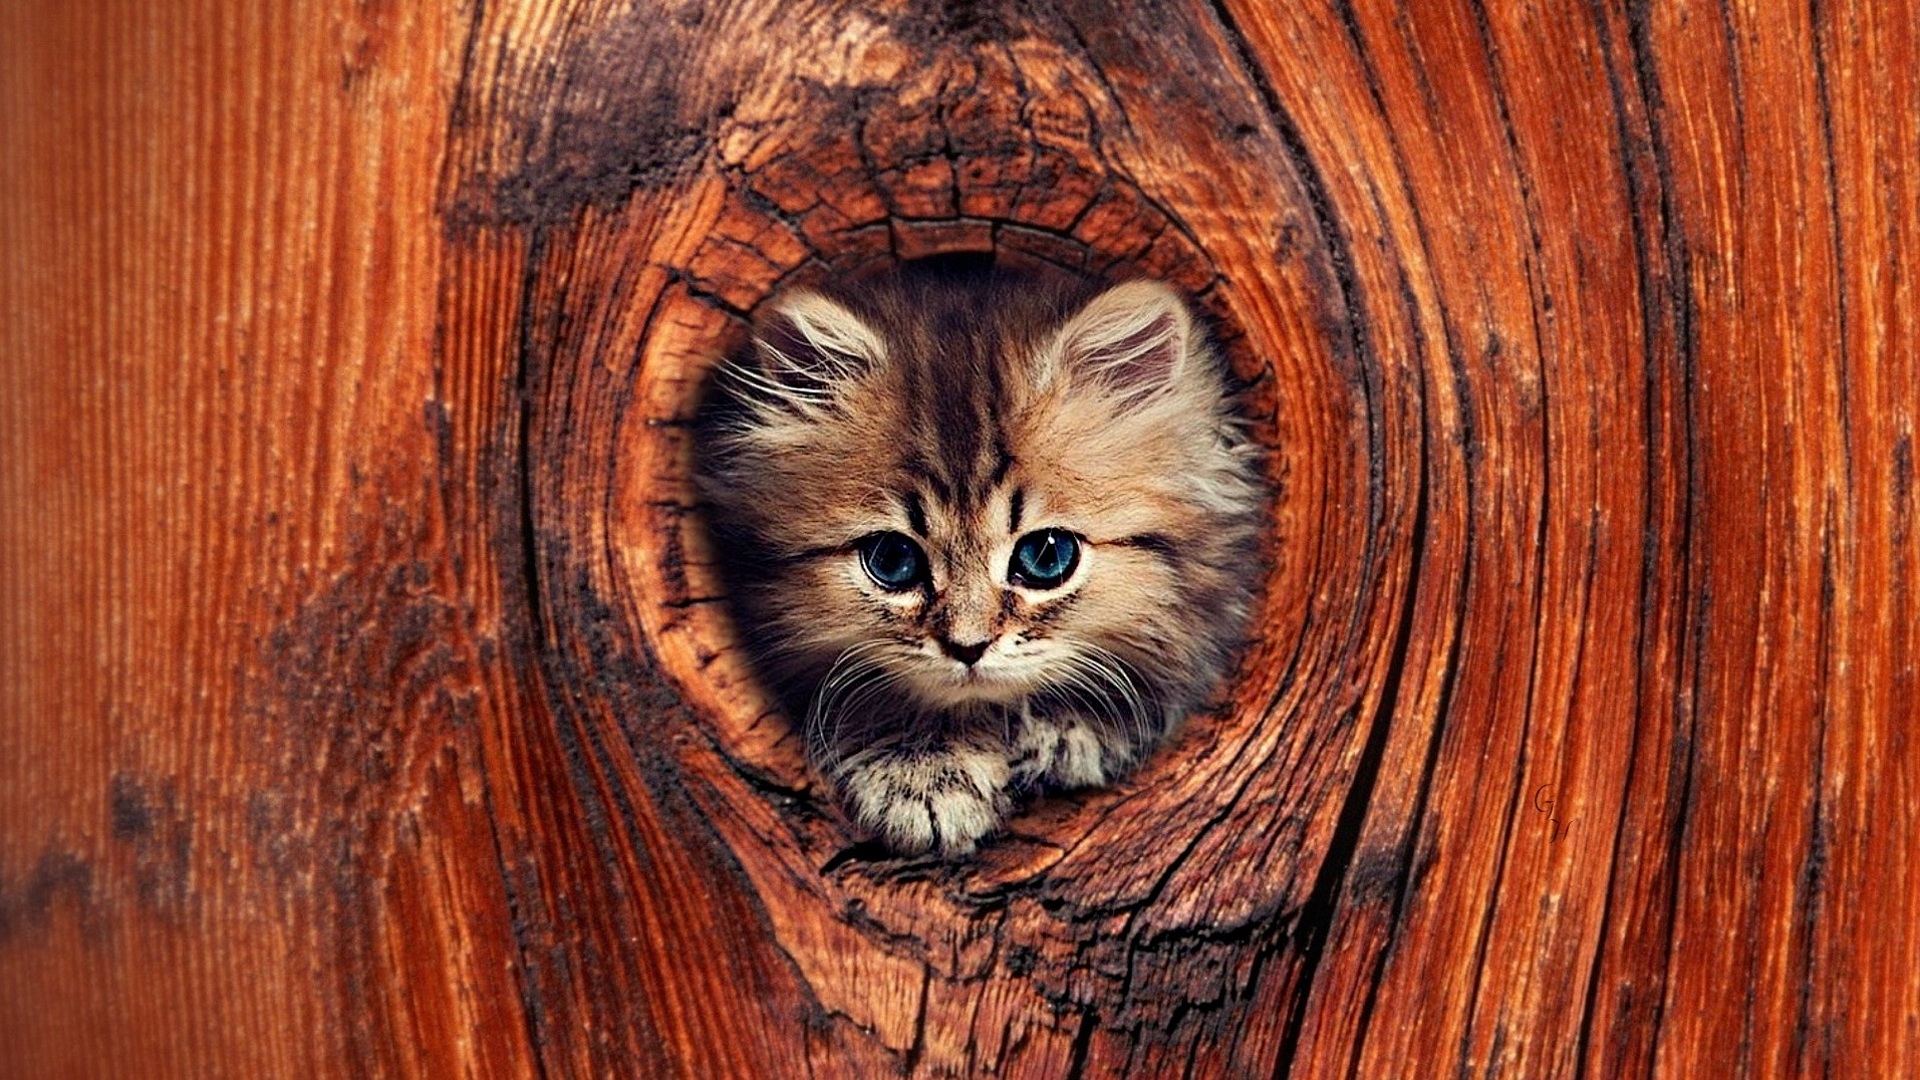 Desktop Wallpaper Cat, Kitten, Kitty, Cute Animal In Hole, Hd Image,  Picture, Background, C7ujp0